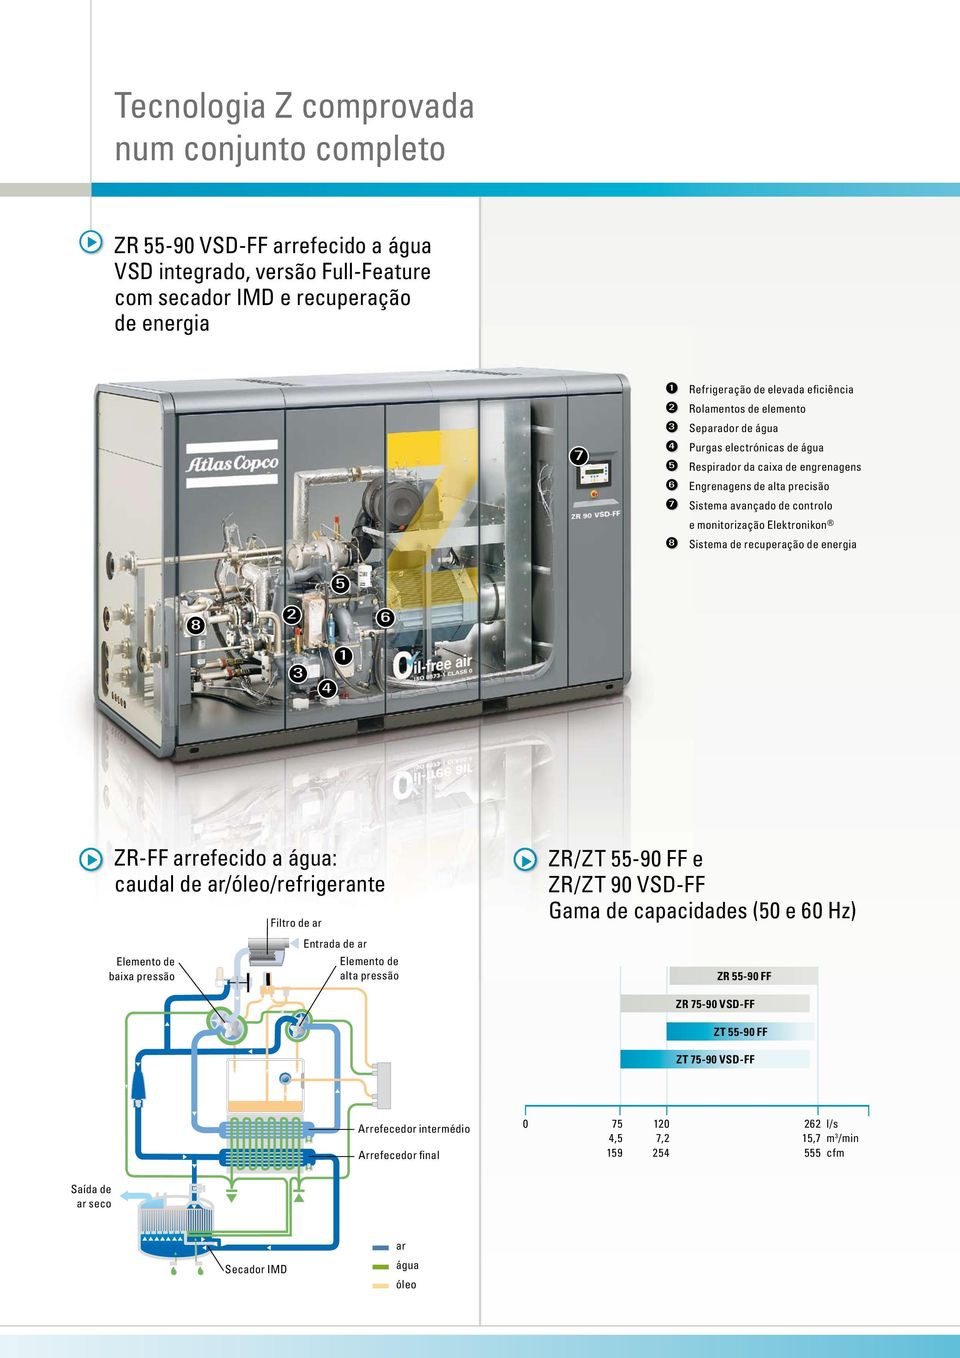 Elektronikon 8 Sistema de recuperação de energia 5 8 2 6 3 4 1 ZR-FF arrefecido a água: caudal de ar/óleo/refrigerante Elemento de baixa pressão Filtro de ar Entrada de ar Elemento de alta pressão